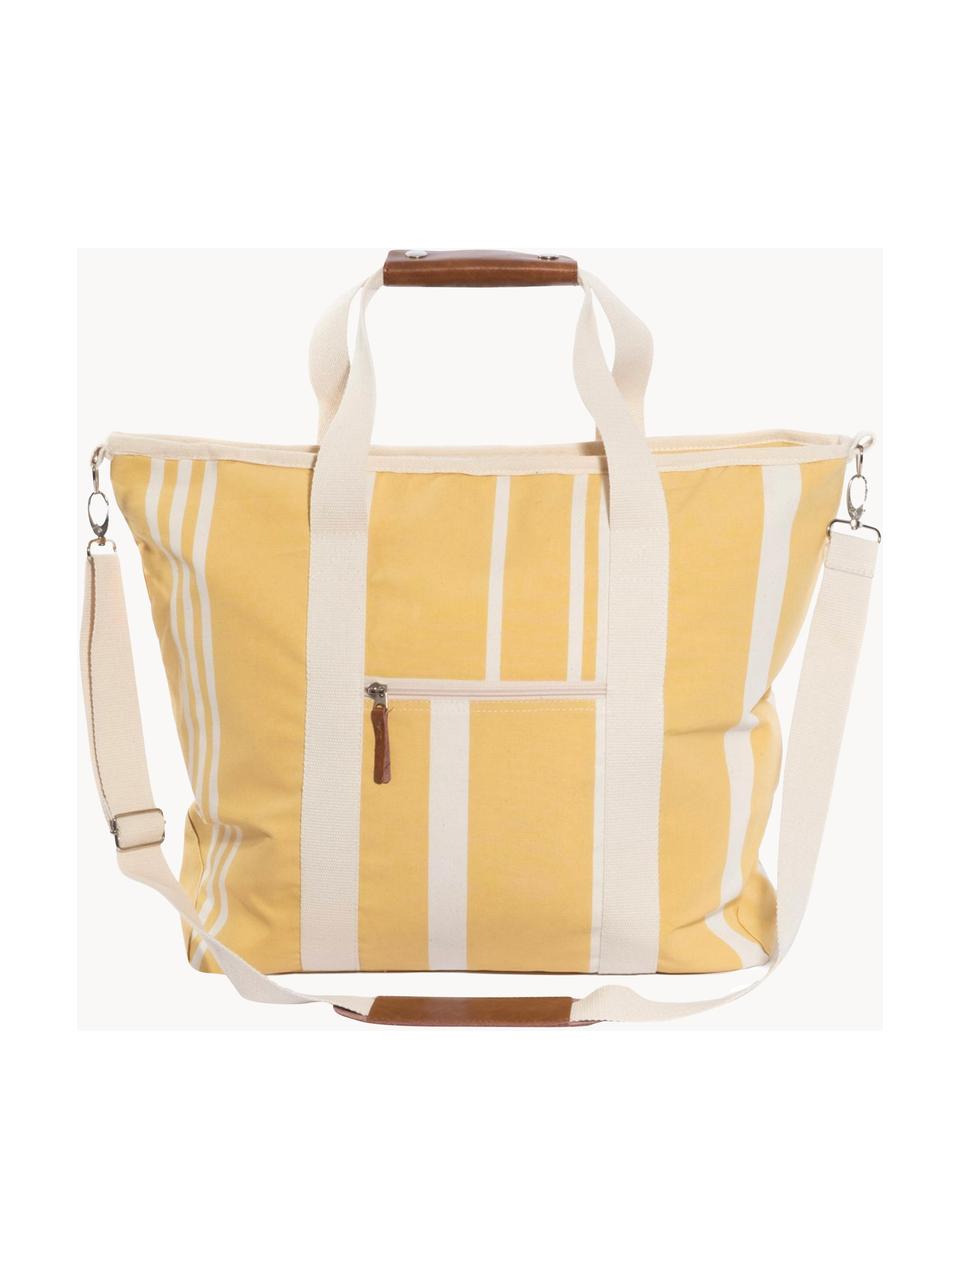 Chladicí taška Strand, 40% bavlna, 40% polyester, 15% voděodolný vinyl, 5% kůže, Žlutá, krémově bílá, D 41 cm, V 51 cm